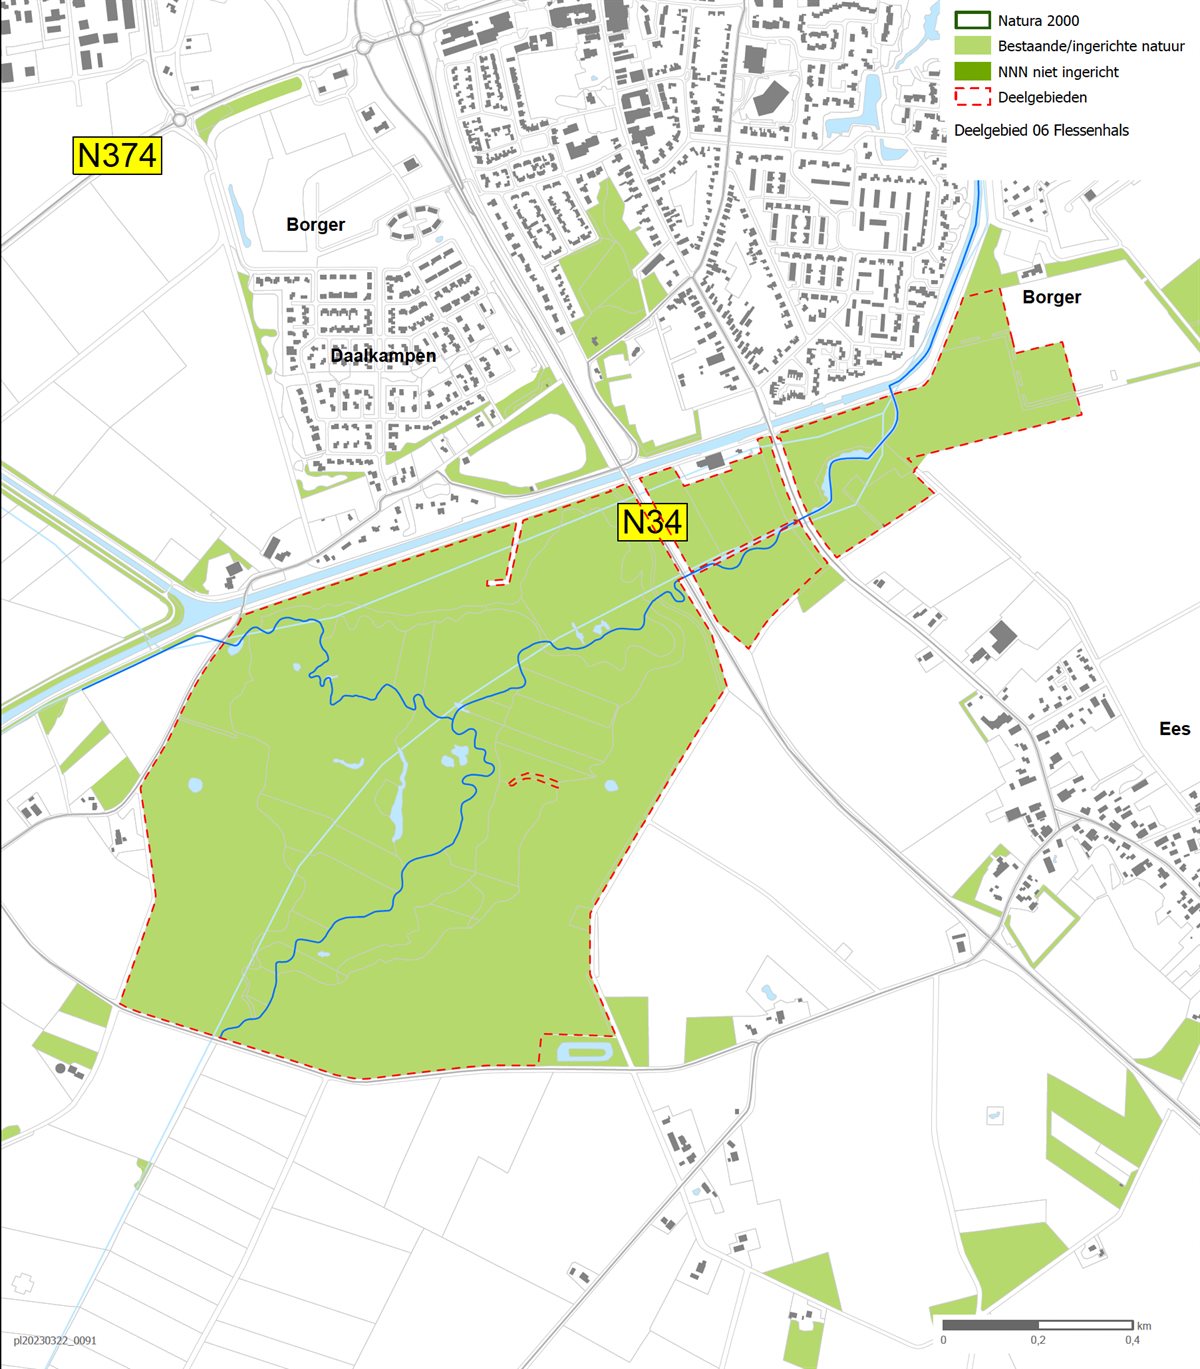 Kaart deelgebied Flessenhals